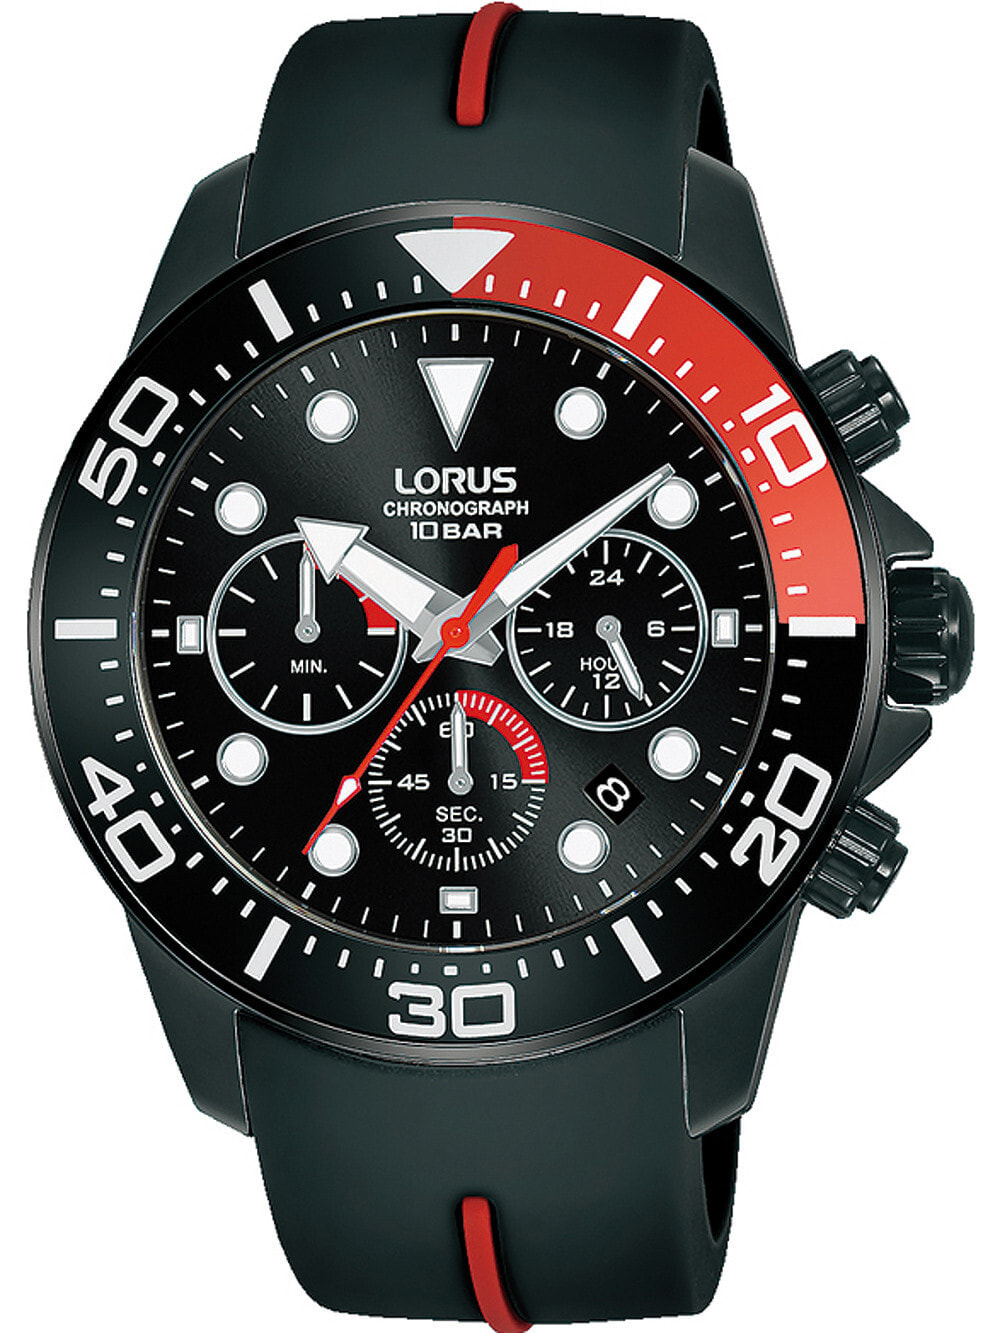 Мужские наручные часы с черным силиконовым ремешком Lorus RT347JX9 chrono mens 43mm 10ATM